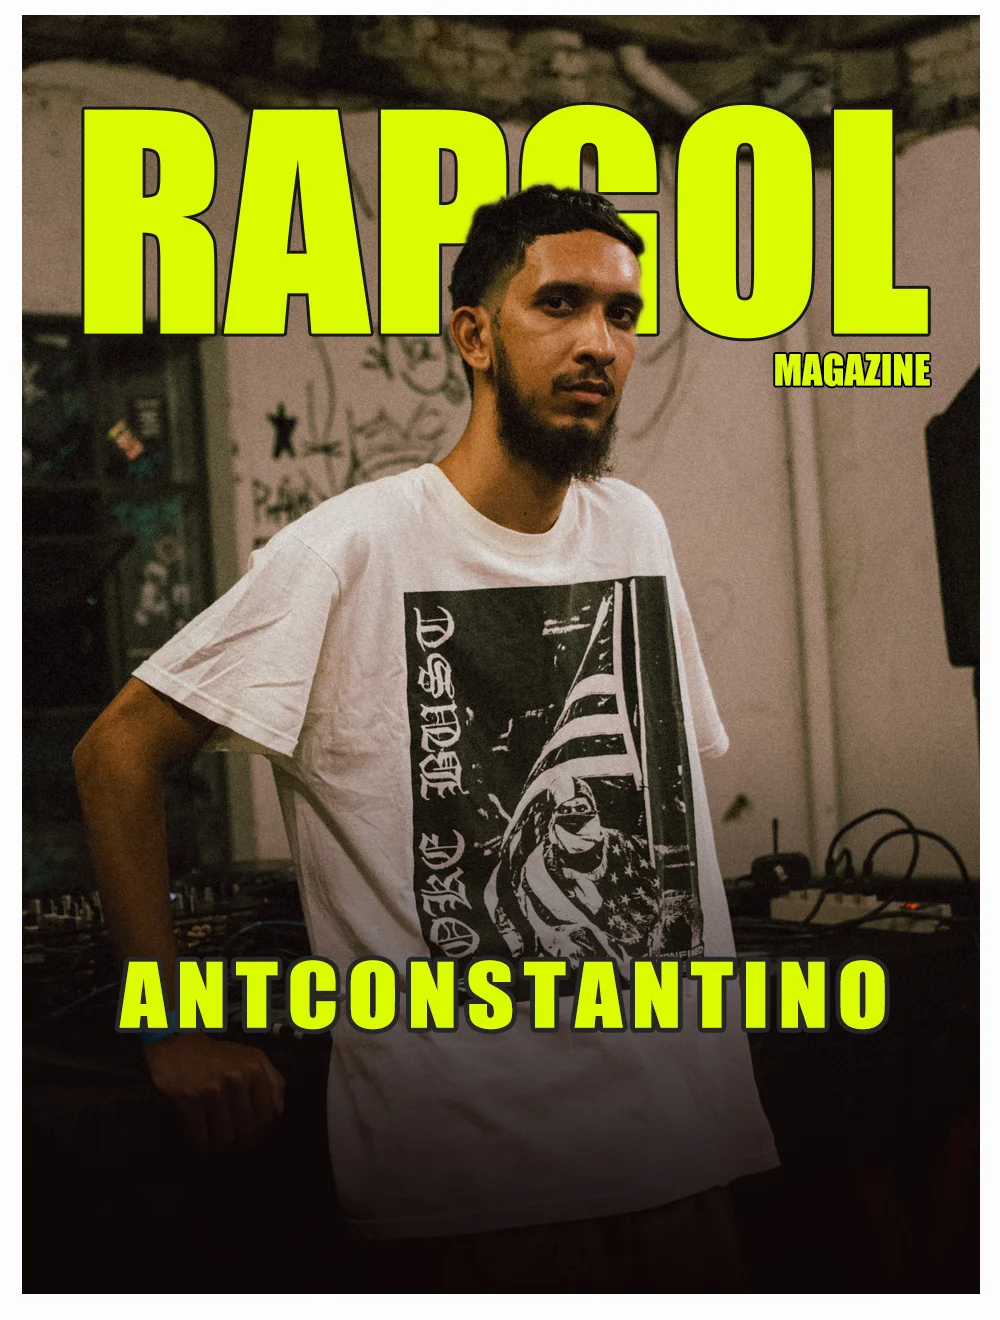 ANTCONSTANTINO fala sobre sua carreira, projetos e muitos mais nesta entrevista de capa da Rapgol Magazine